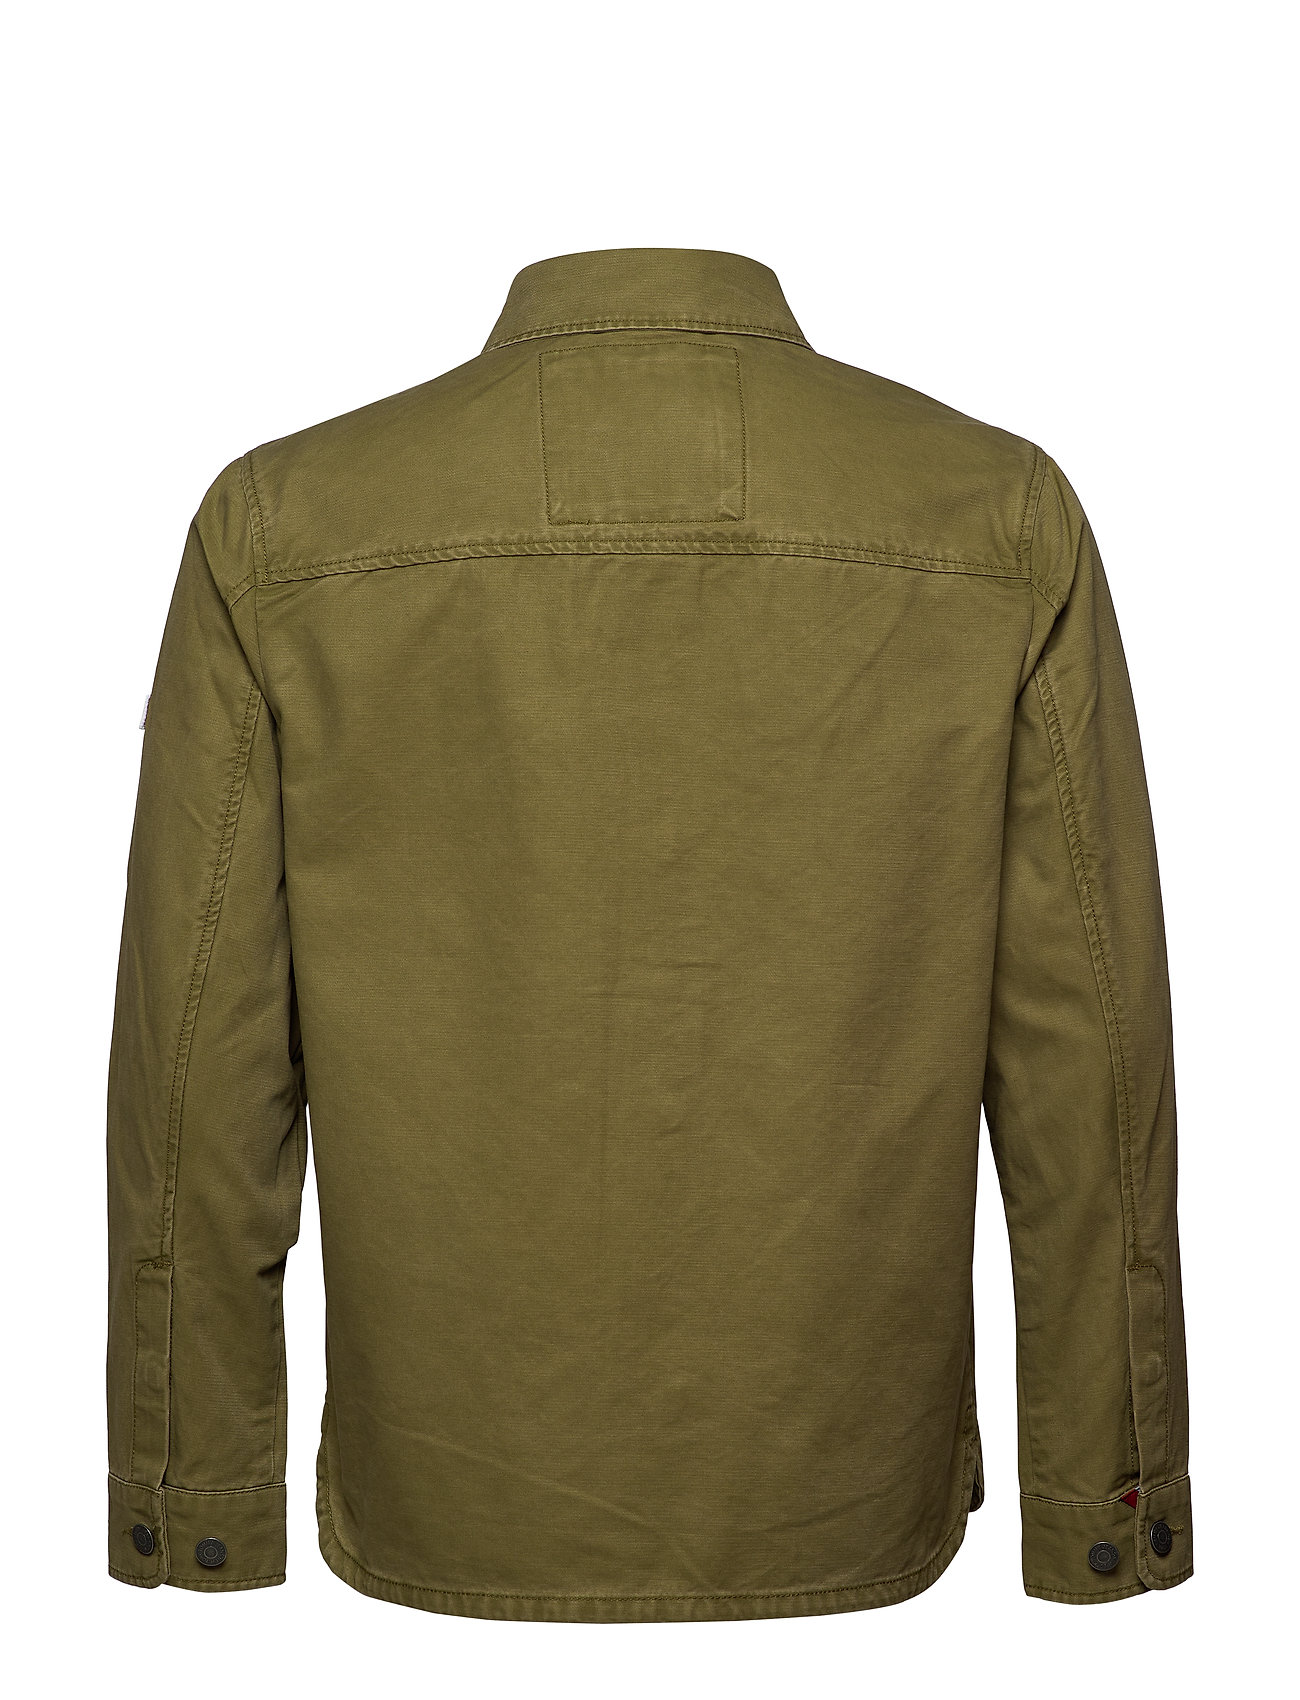 Seraph lineal vente Tommy Hilfiger denim jakker – Tjm Cotton Cargo Jacket Jakke Denimjakke Grøn  Tommy Jeans til herre i Uniform olive - Pashion.dk